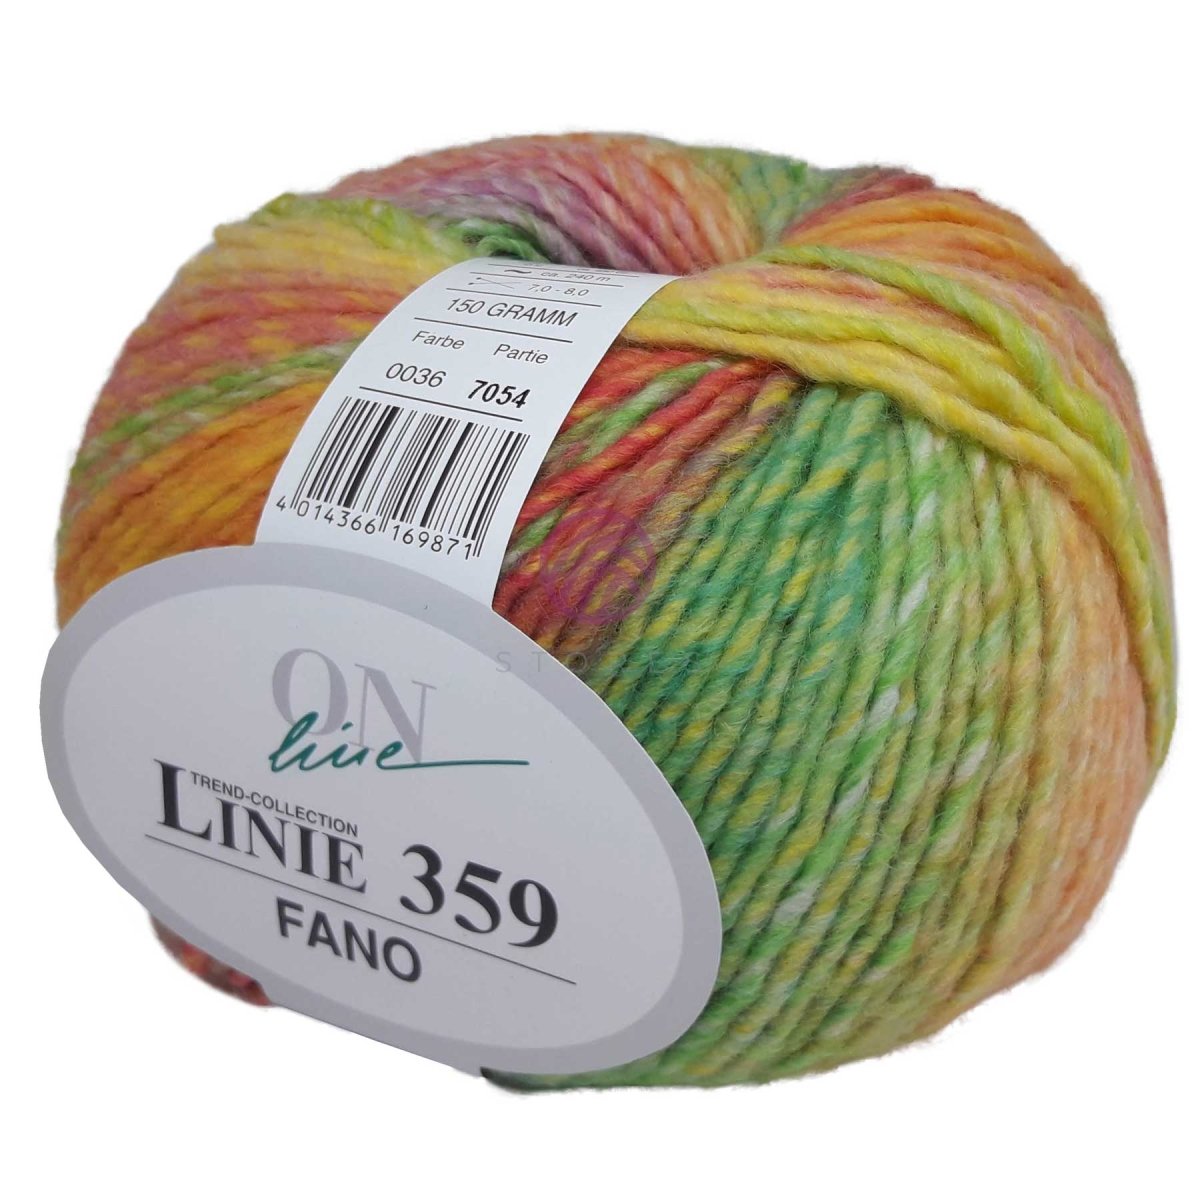 FANO - Crochetstores110359-0364014366169871